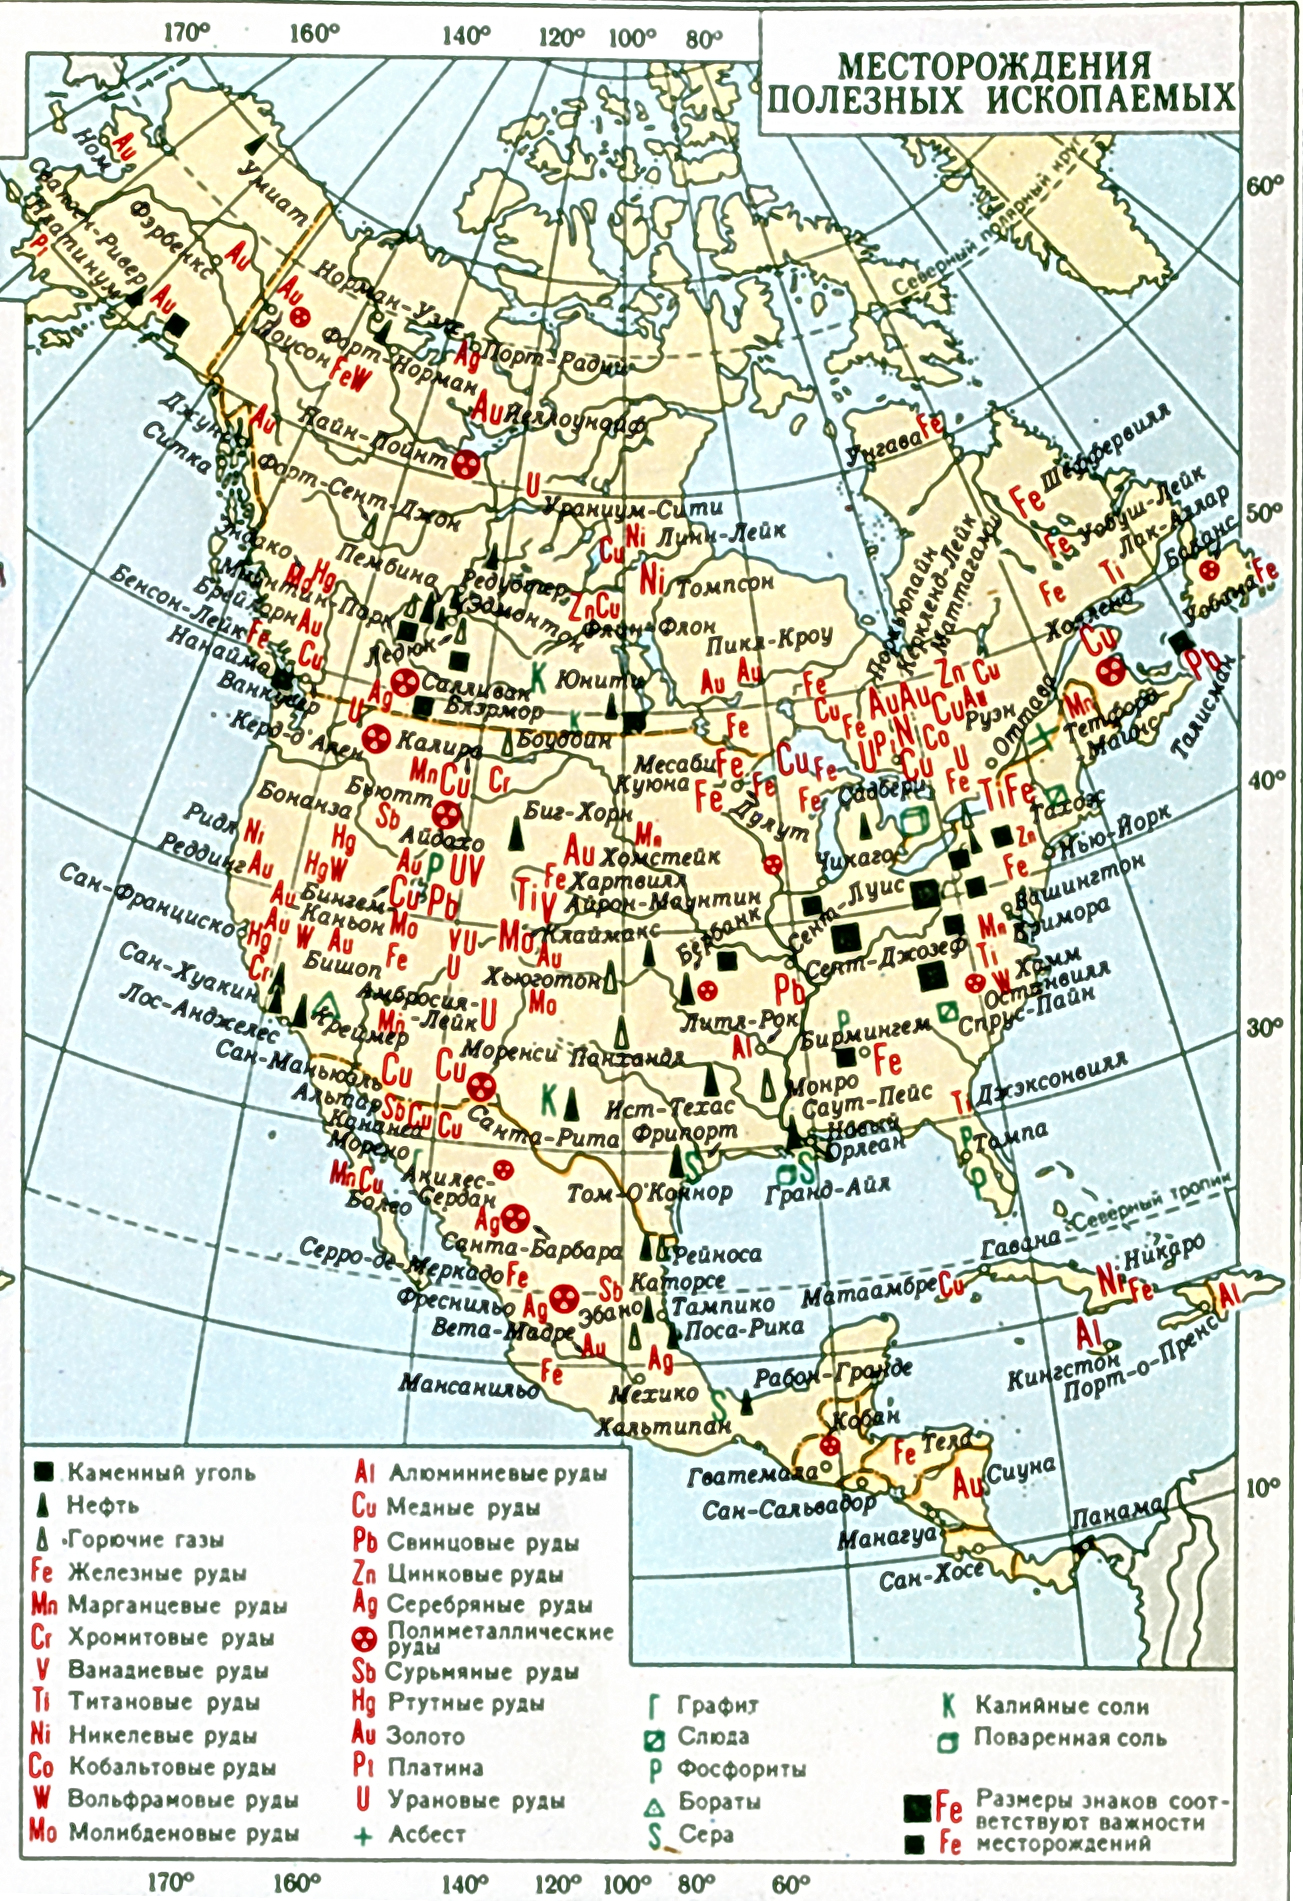 Полезные ископаемые северной америки на контурной карте. Минеральные ресурсы США карта. Карта Северной Америки месторождения полезных ископаемых. Полезные ископаемые США на карте. Месторождения полезных ископаемых Северной Америки.